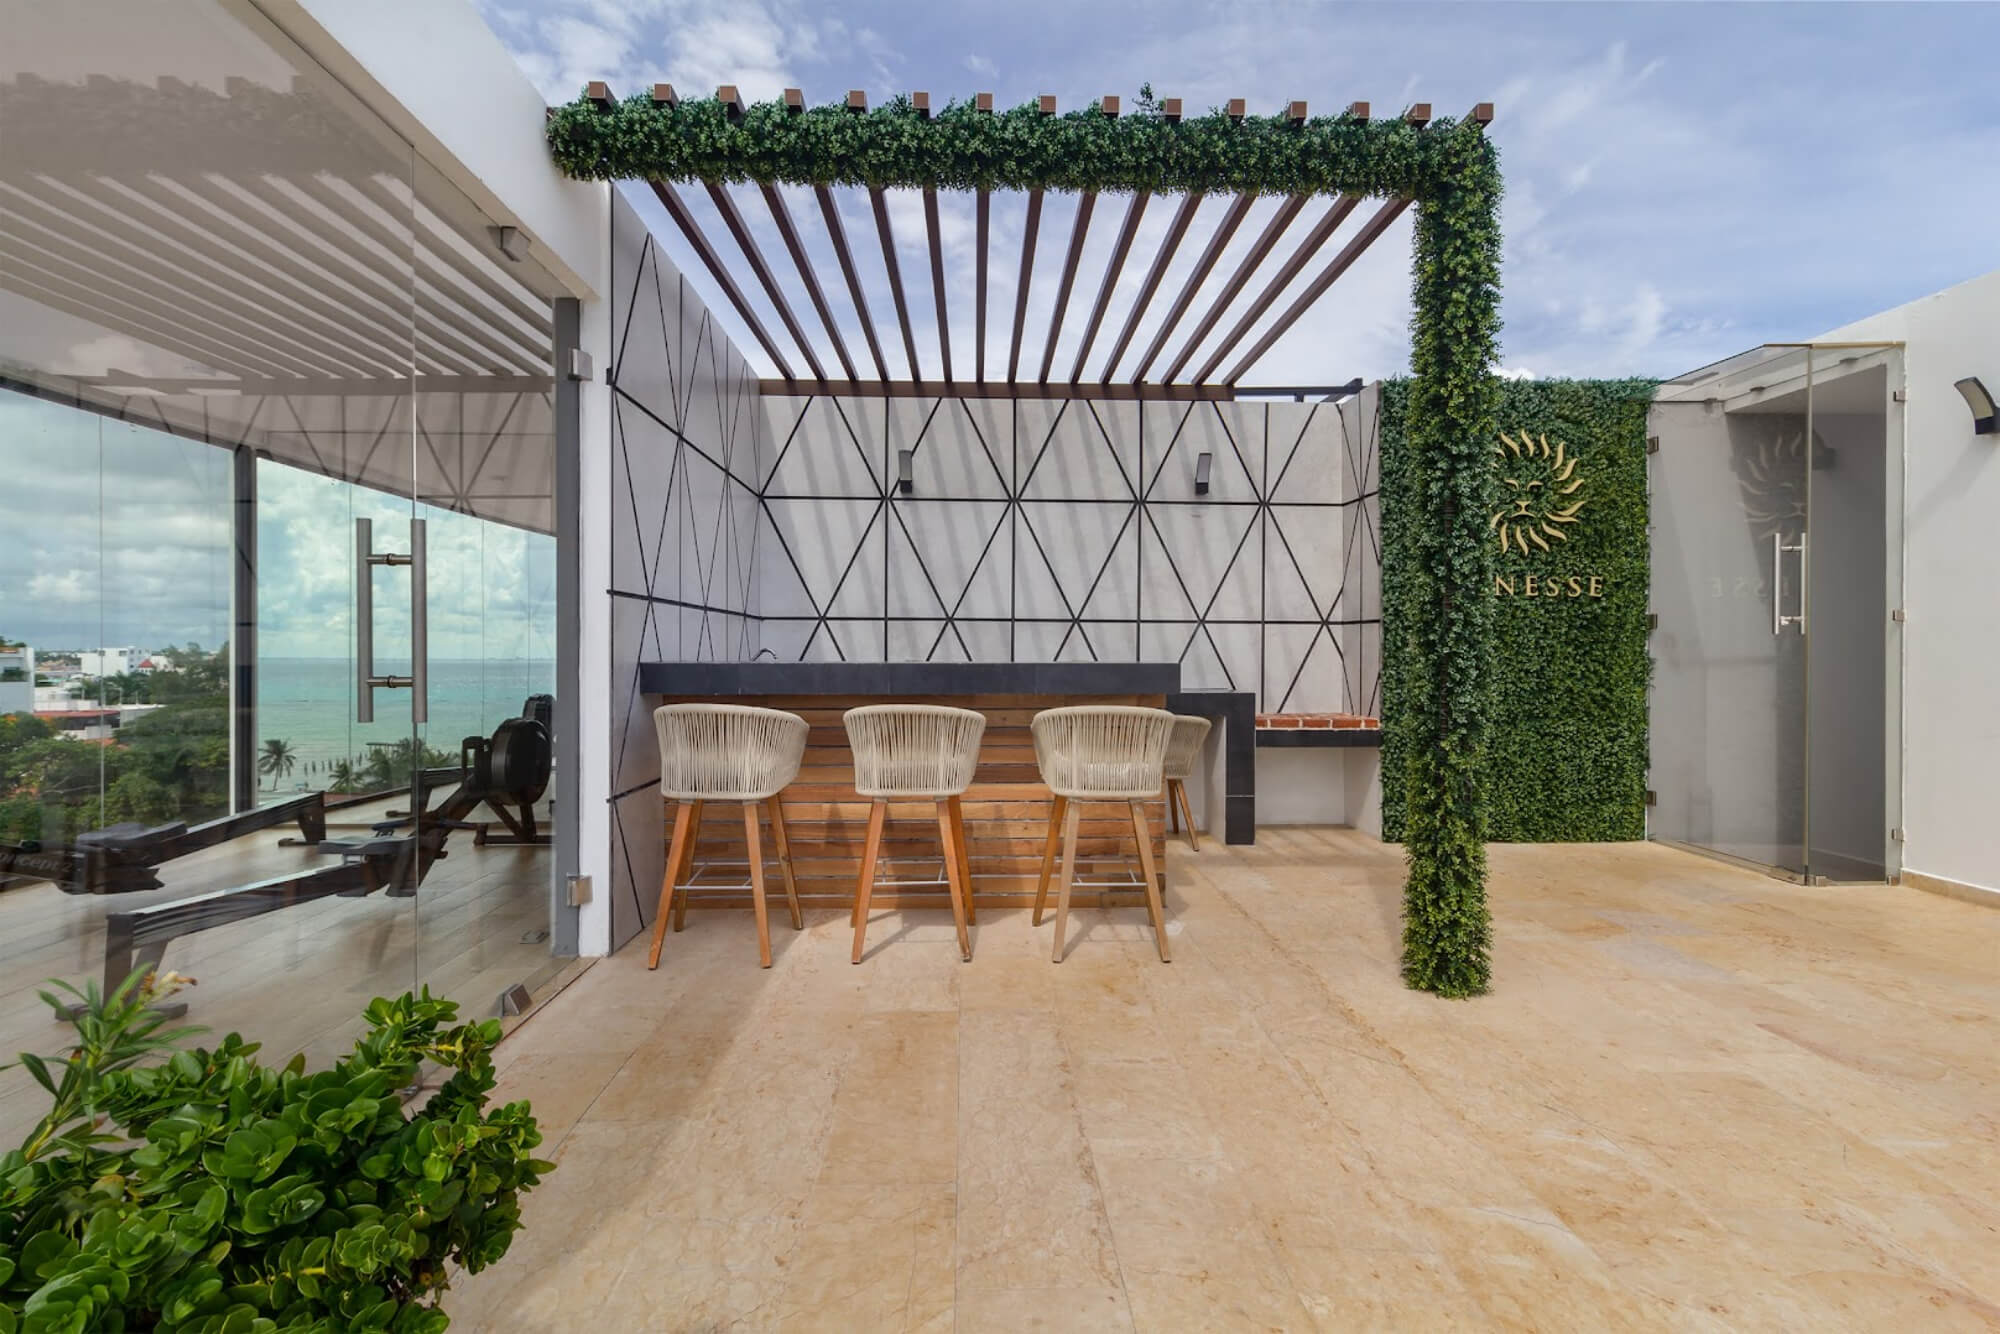 Departamento con terraza, espacios amplios, cuarto de servicio, Playa del Carmen